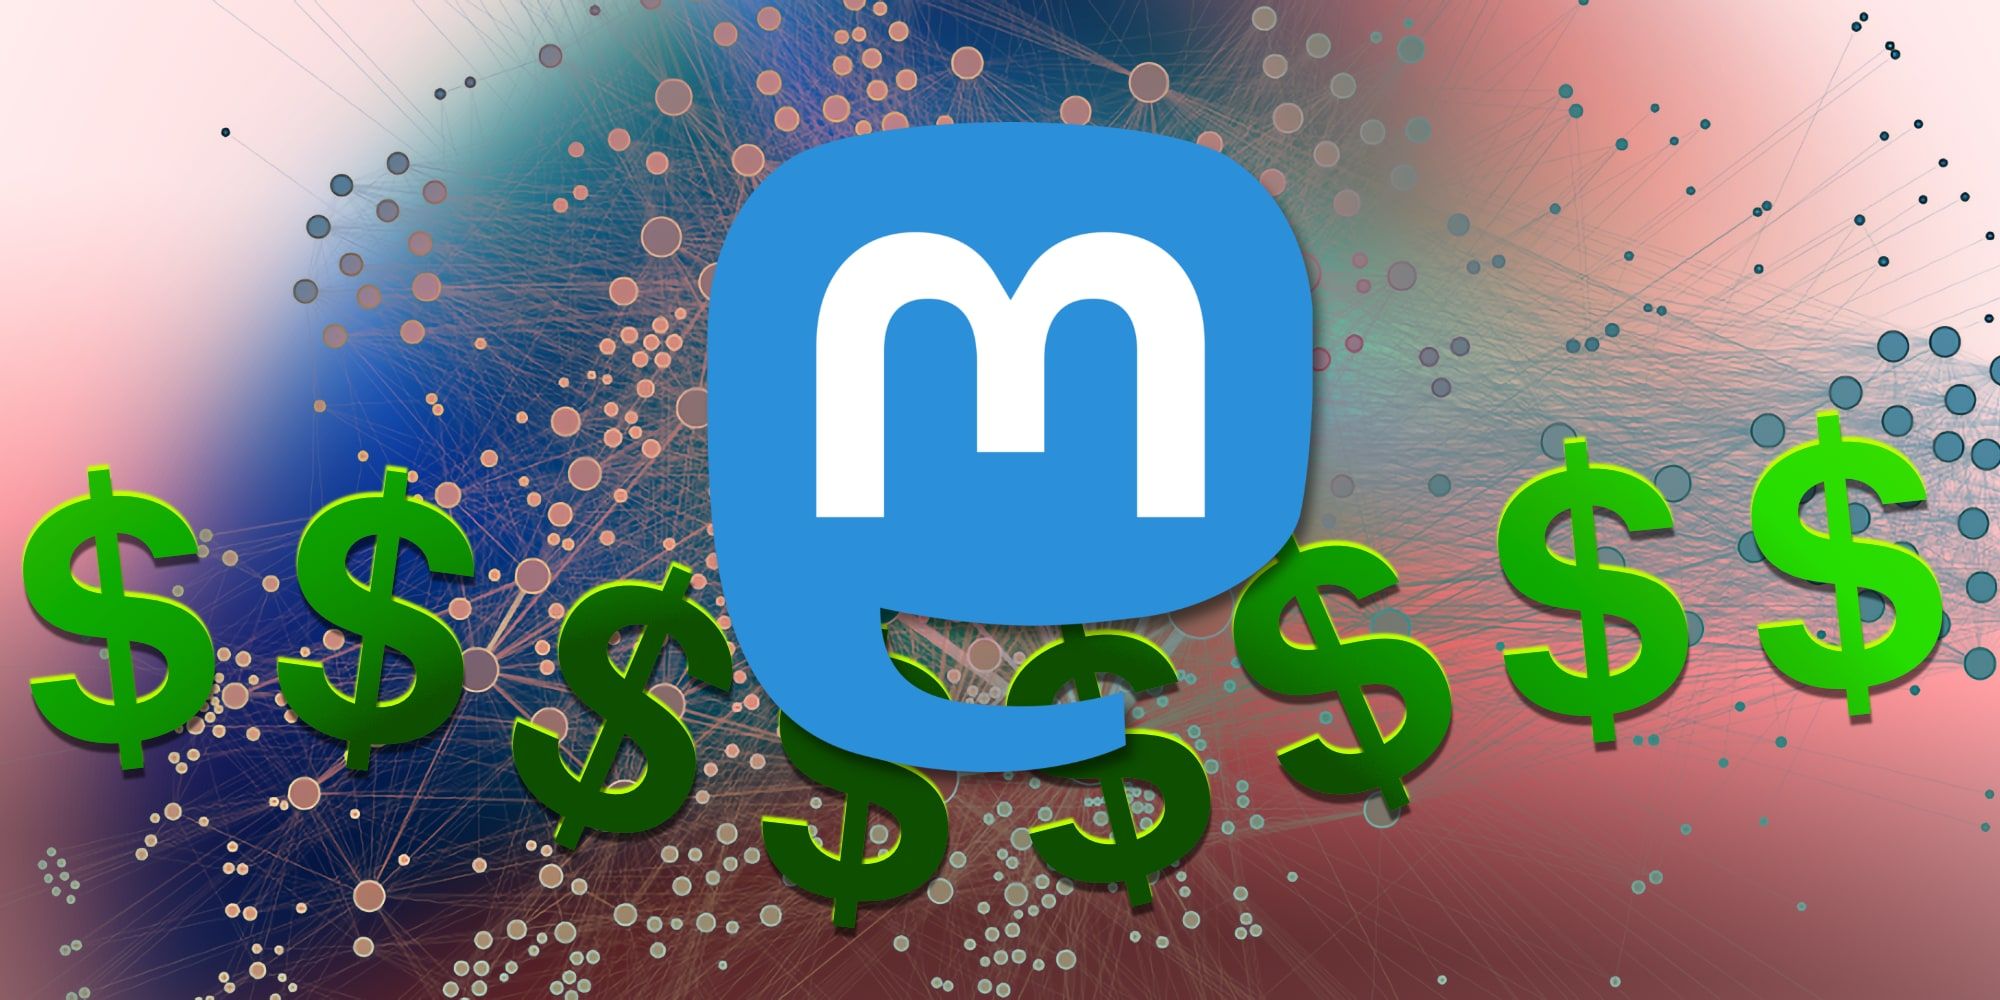 Mastodon Logo Dollar Signs Over Network BG